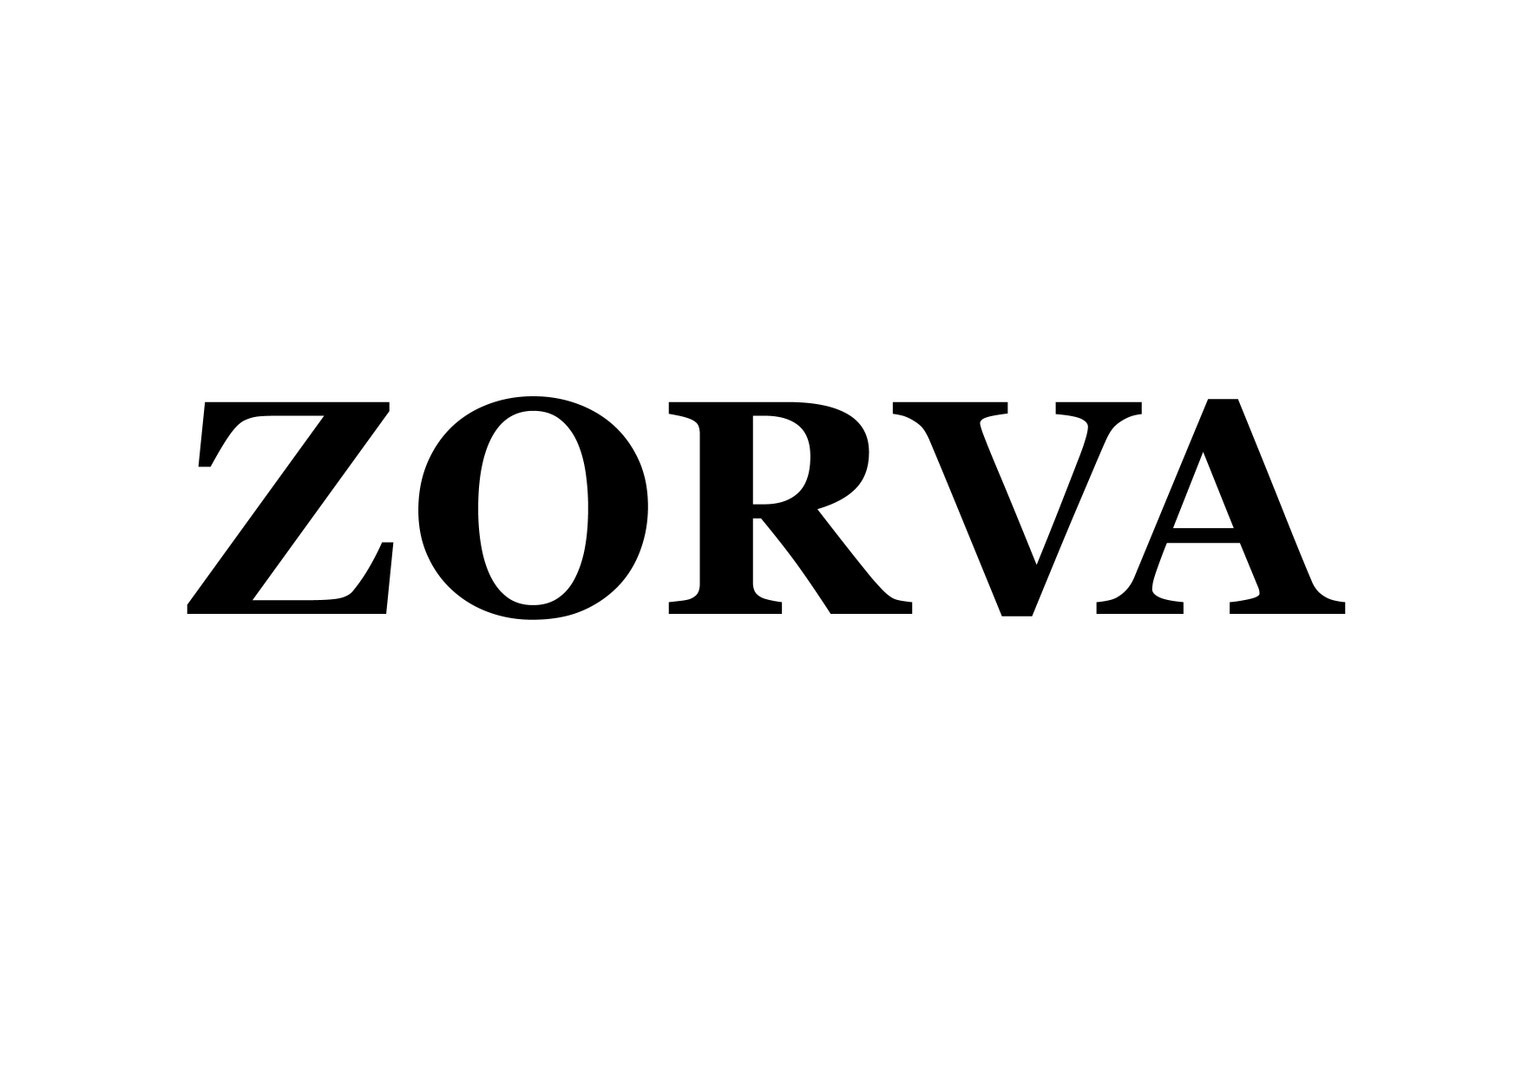 ZORVA (公式サイト)